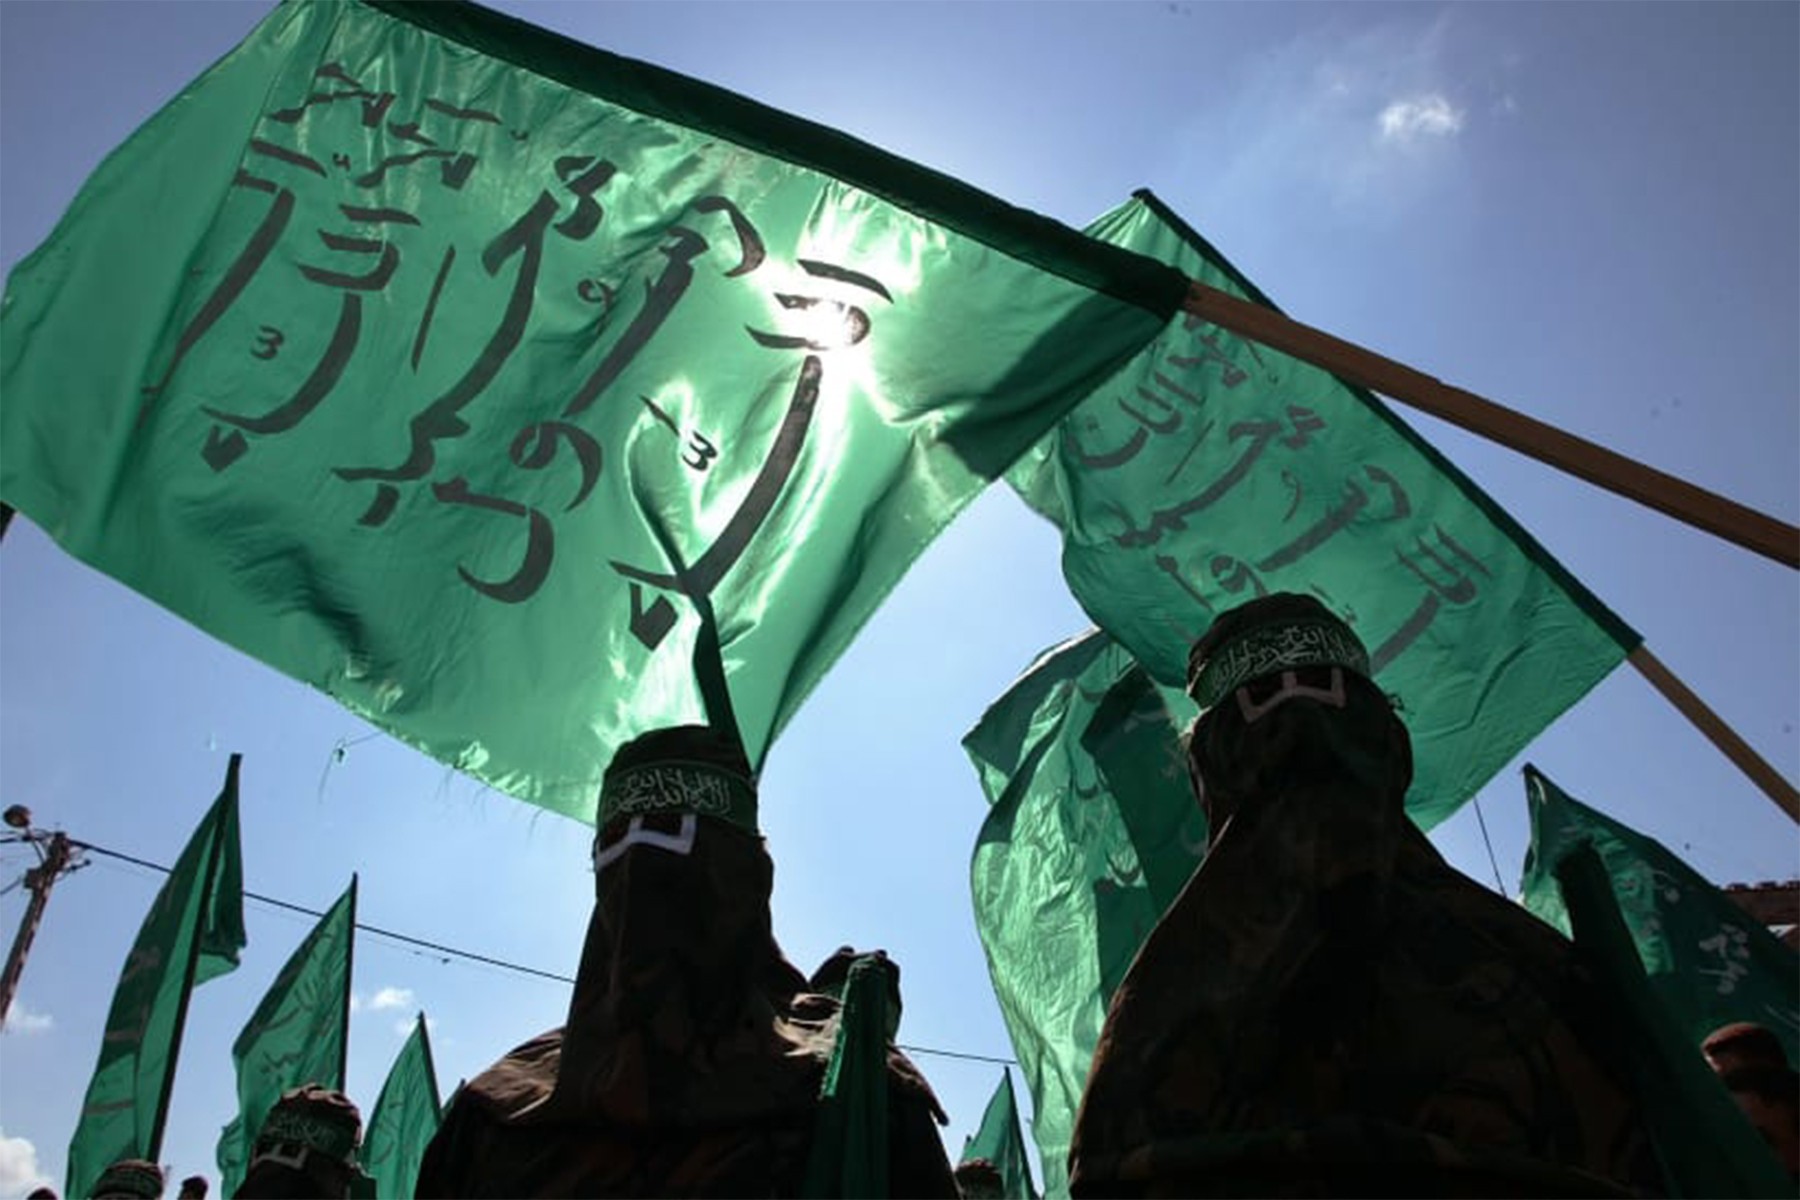 حماس می گوید در صورت ایجاد کشور مستقل فلسطین، این گروه سلاح های خود را زمین می گذارد